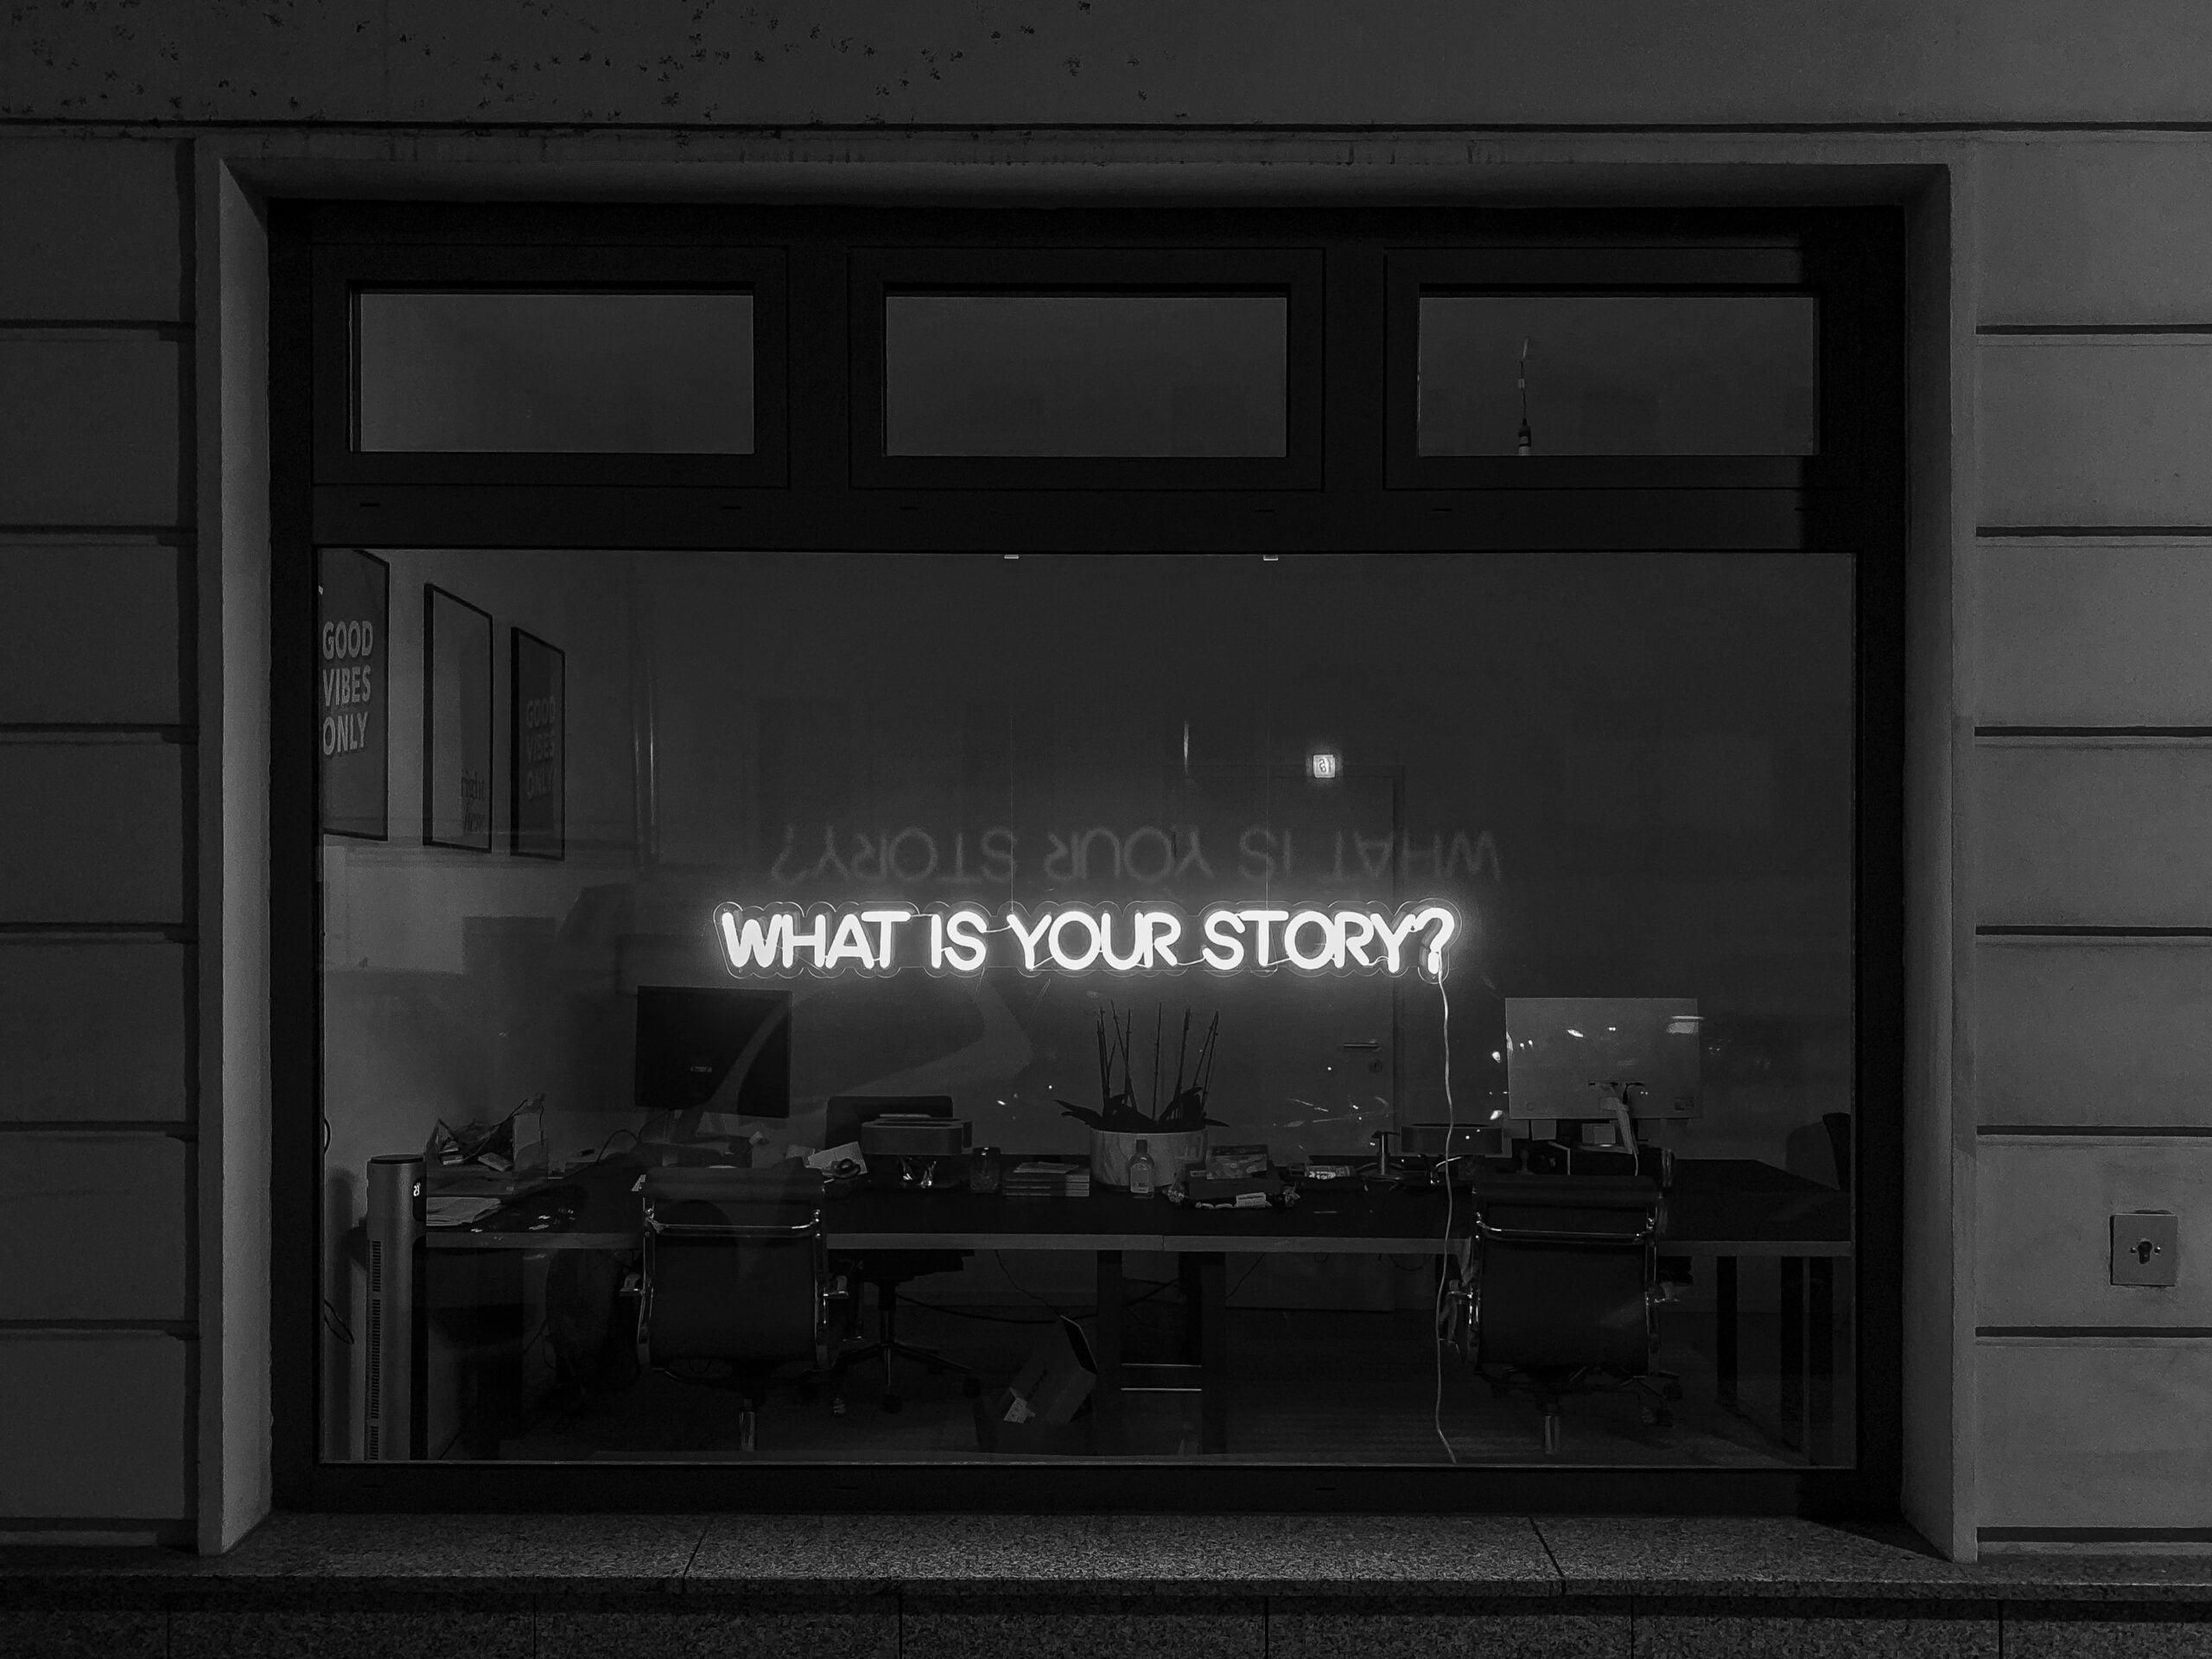 Neon Sign met de vraag wat jouw verhaal is. Foto: Unsplash / Etienne Girardet